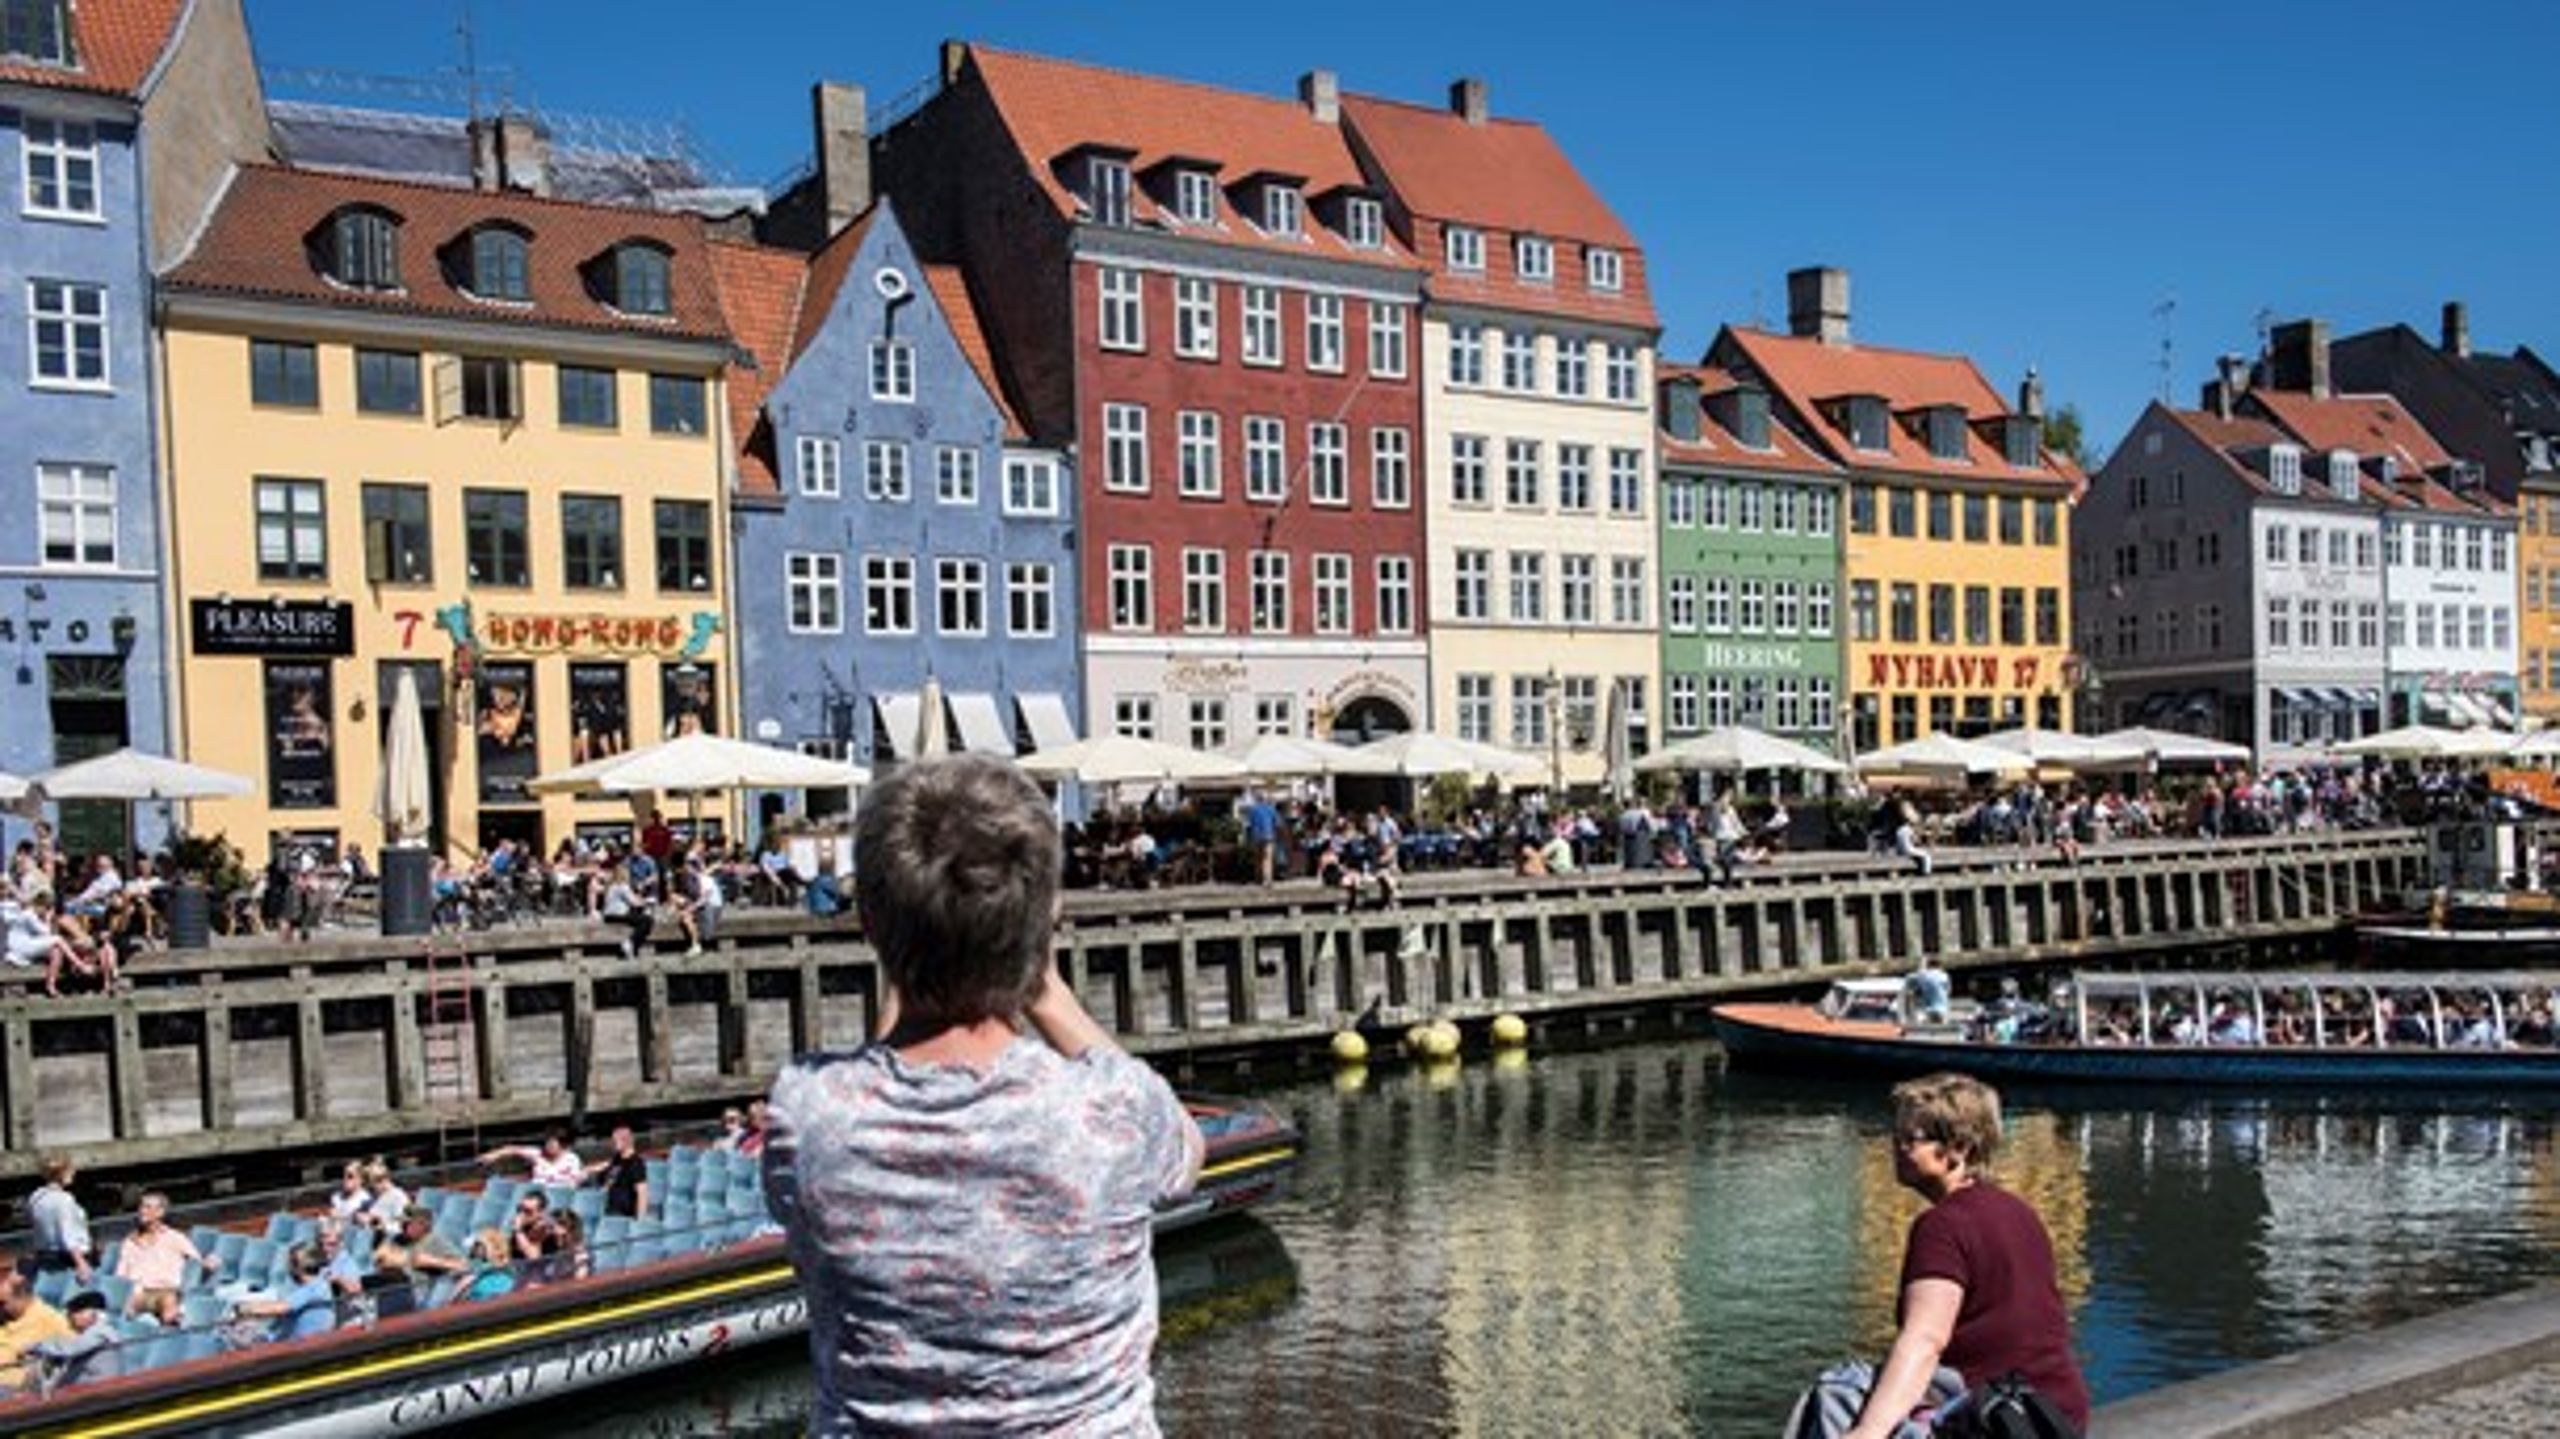 Det er luksuriøst at bo centralt i København – og det er både naturligt og godt at dele sin bolig med andre verdensborgere, skriver Christian Eriksen.